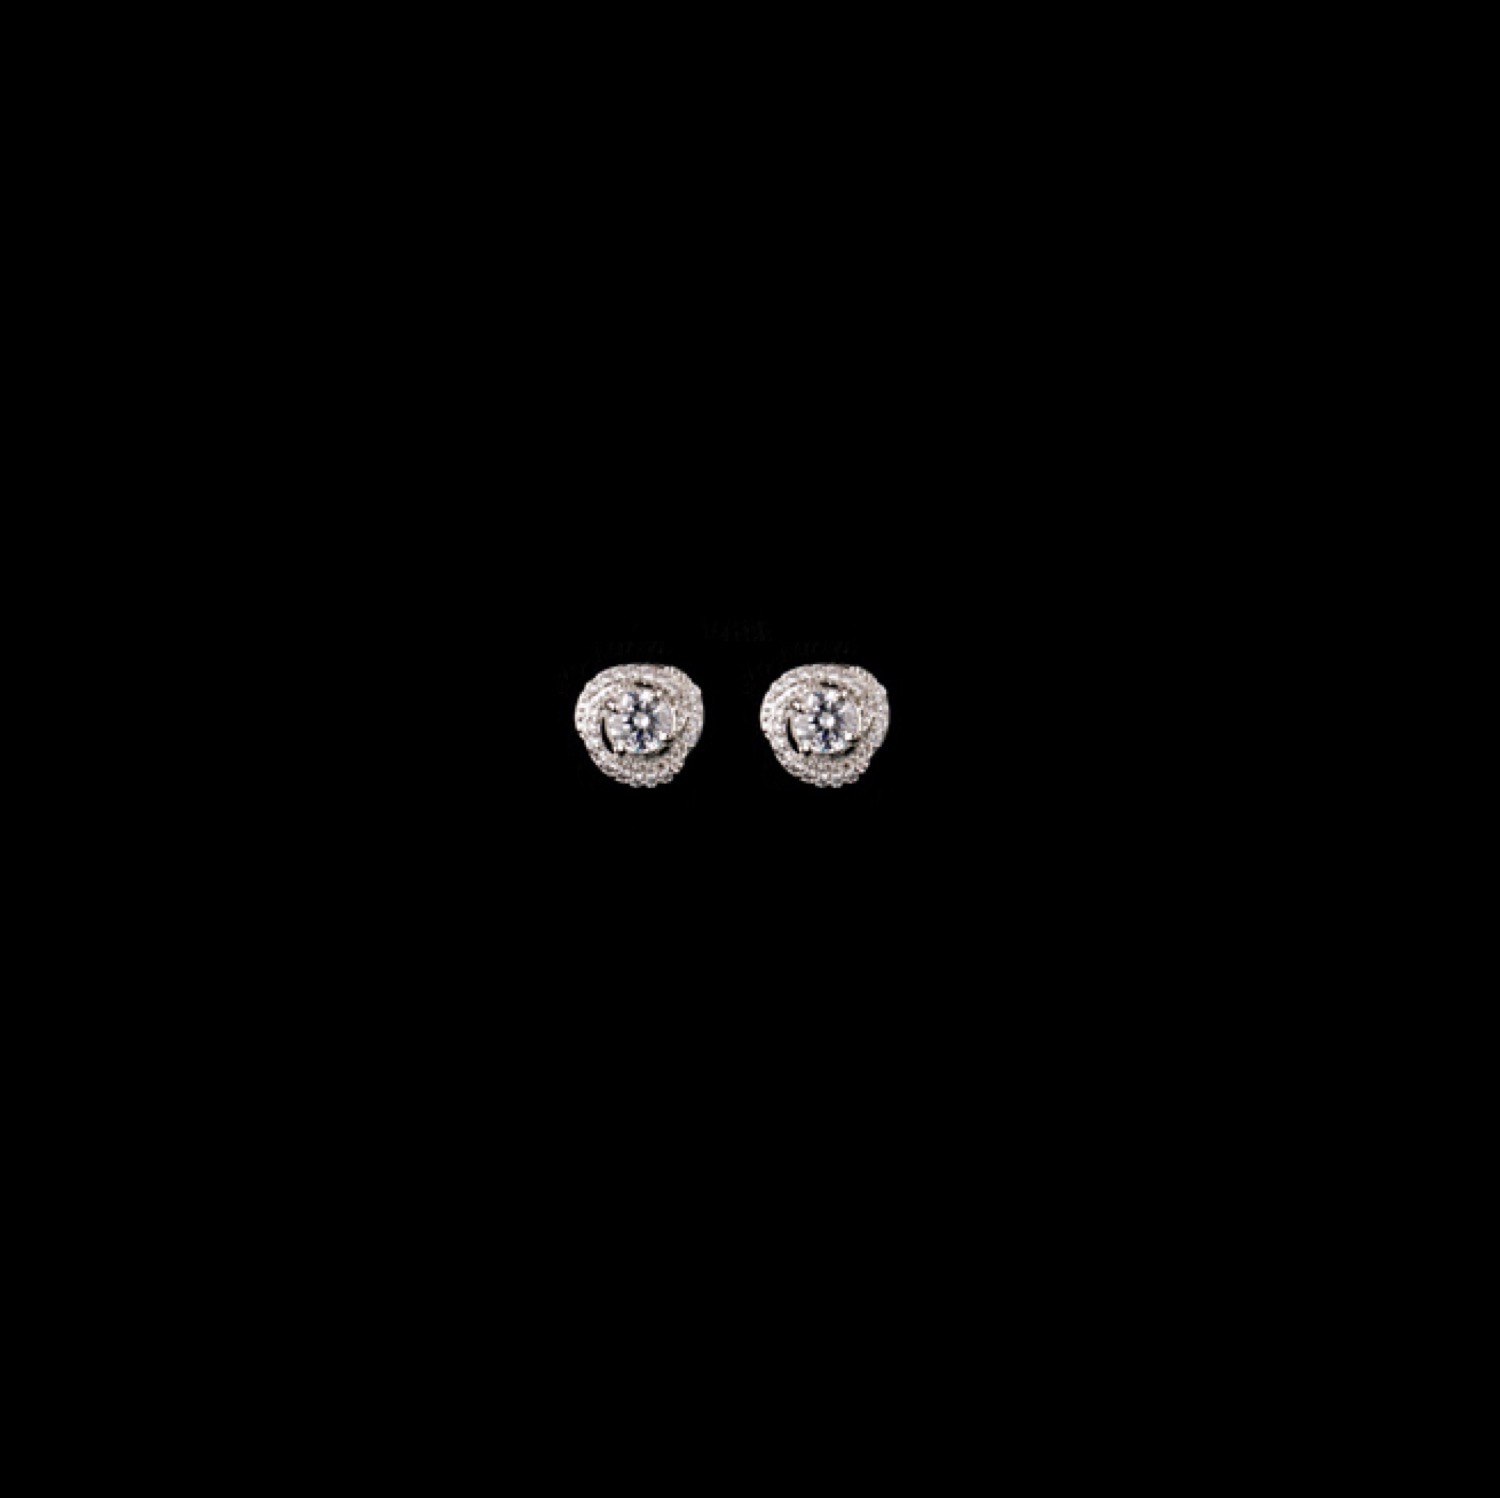 varam_earrings_102022_trillion_shaped_white_stone_sivler_earrings-1